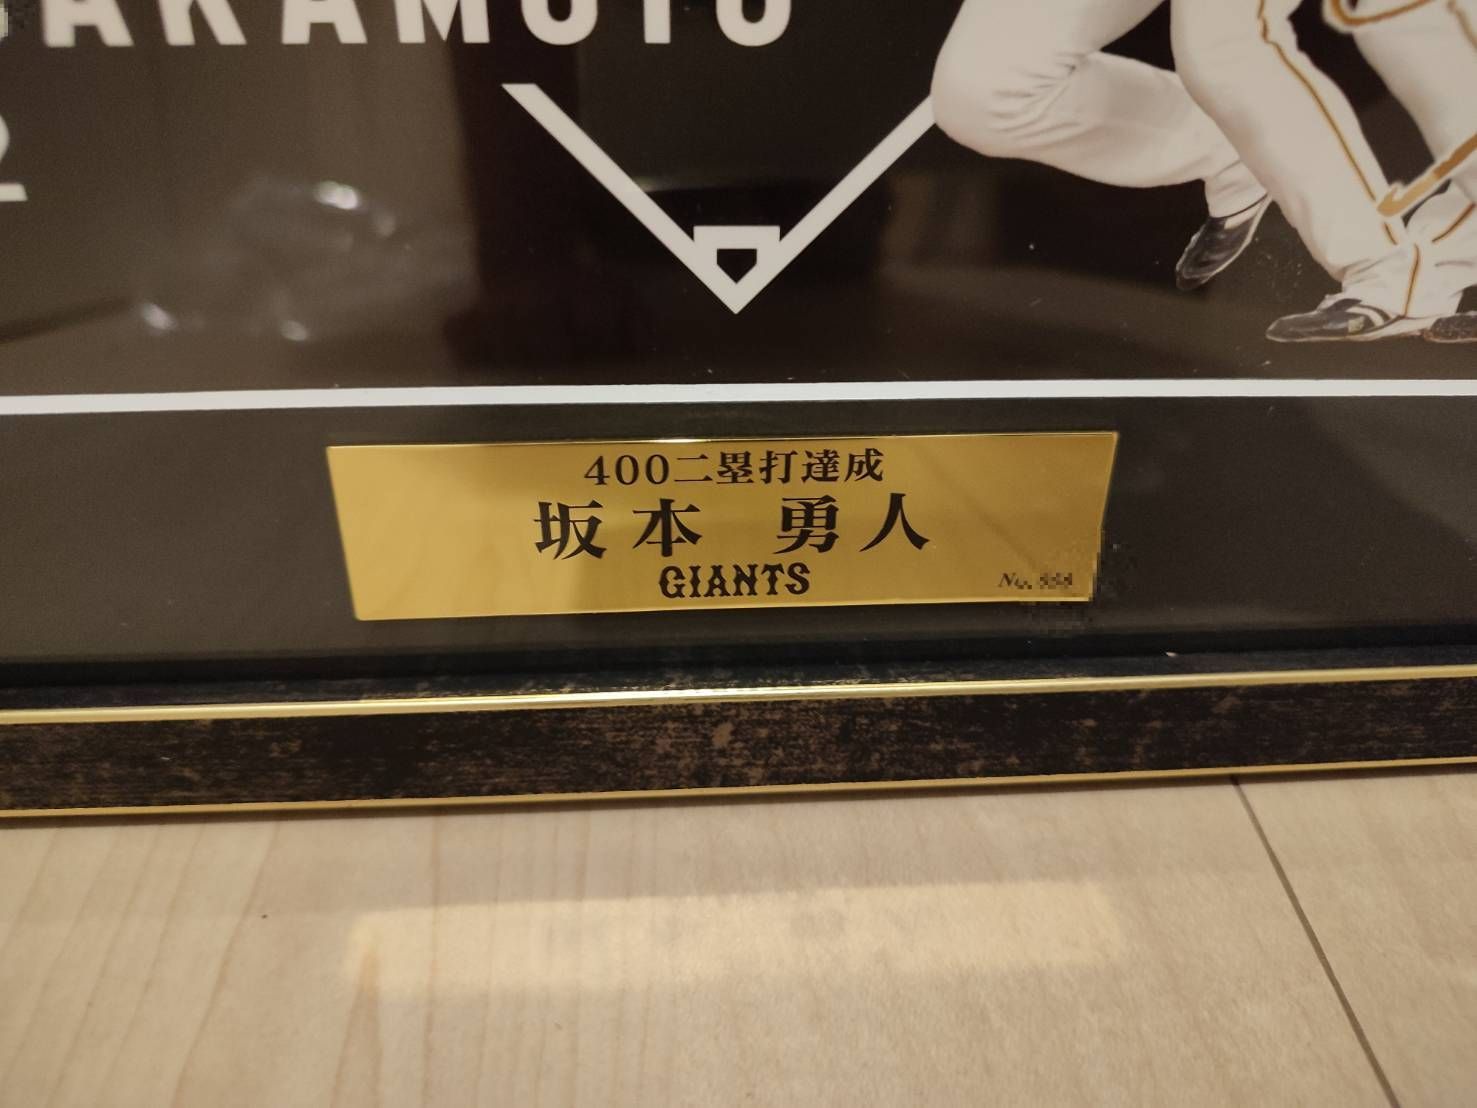 坂本勇人選手 通算400二塁打記念 サインシリアルナンバー入りフォト